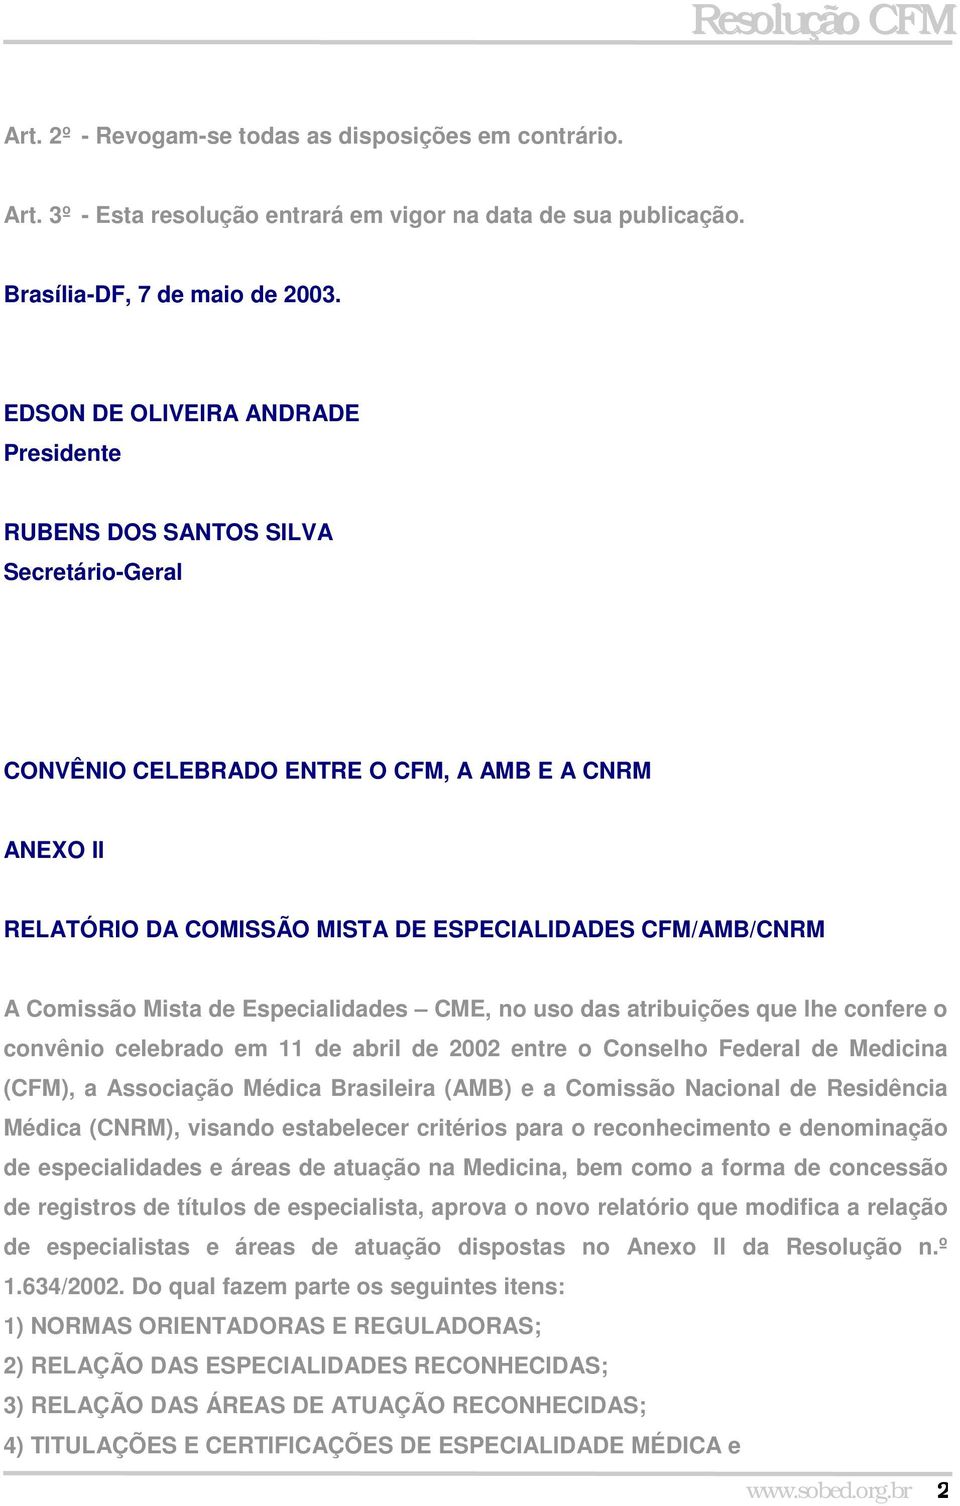 Comissão Mista de Especialidades CME, no uso das atribuições que lhe confere o convênio celebrado em 11 de abril de 2002 entre o Conselho Federal de Medicina (CFM), a Associação Médica Brasileira